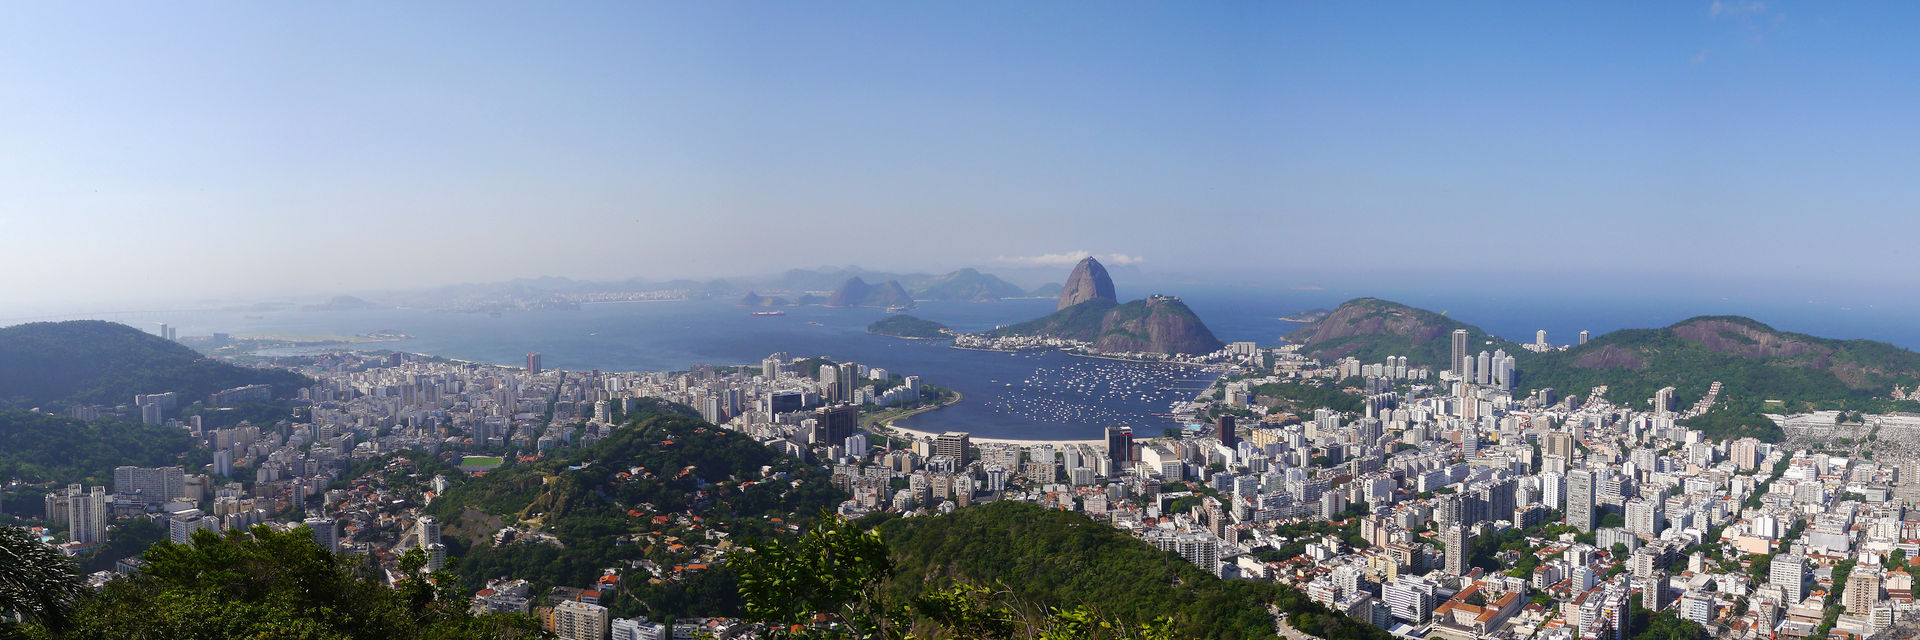 Rio-2016-banner